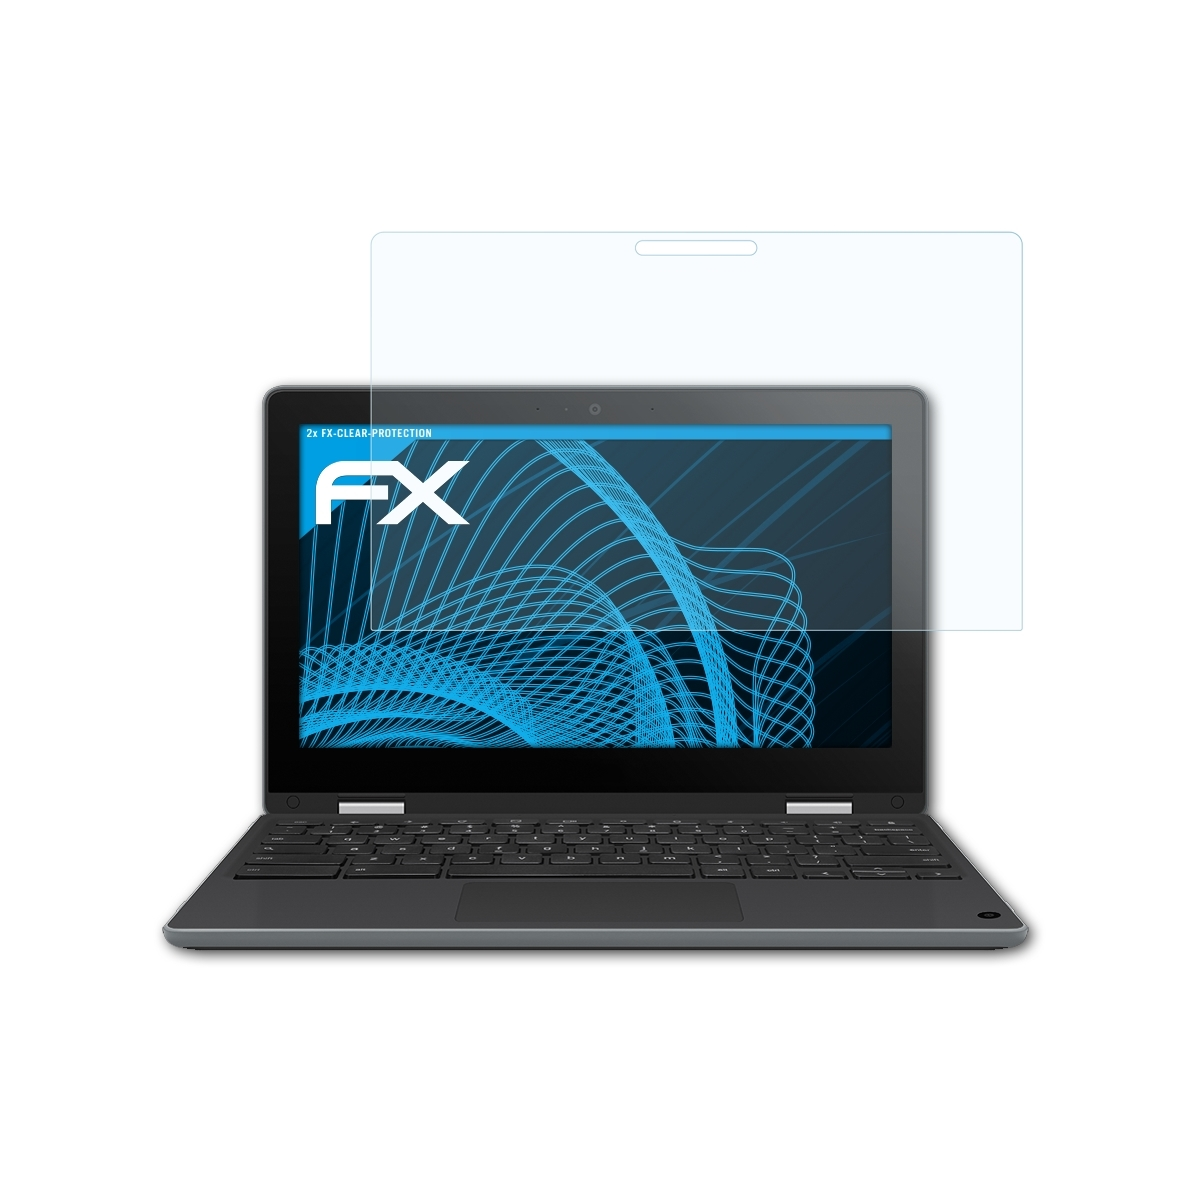 2x Chromebook ATFOLIX Asus FX-Clear Displayschutz(für (C214MA-BW0163)) Flip